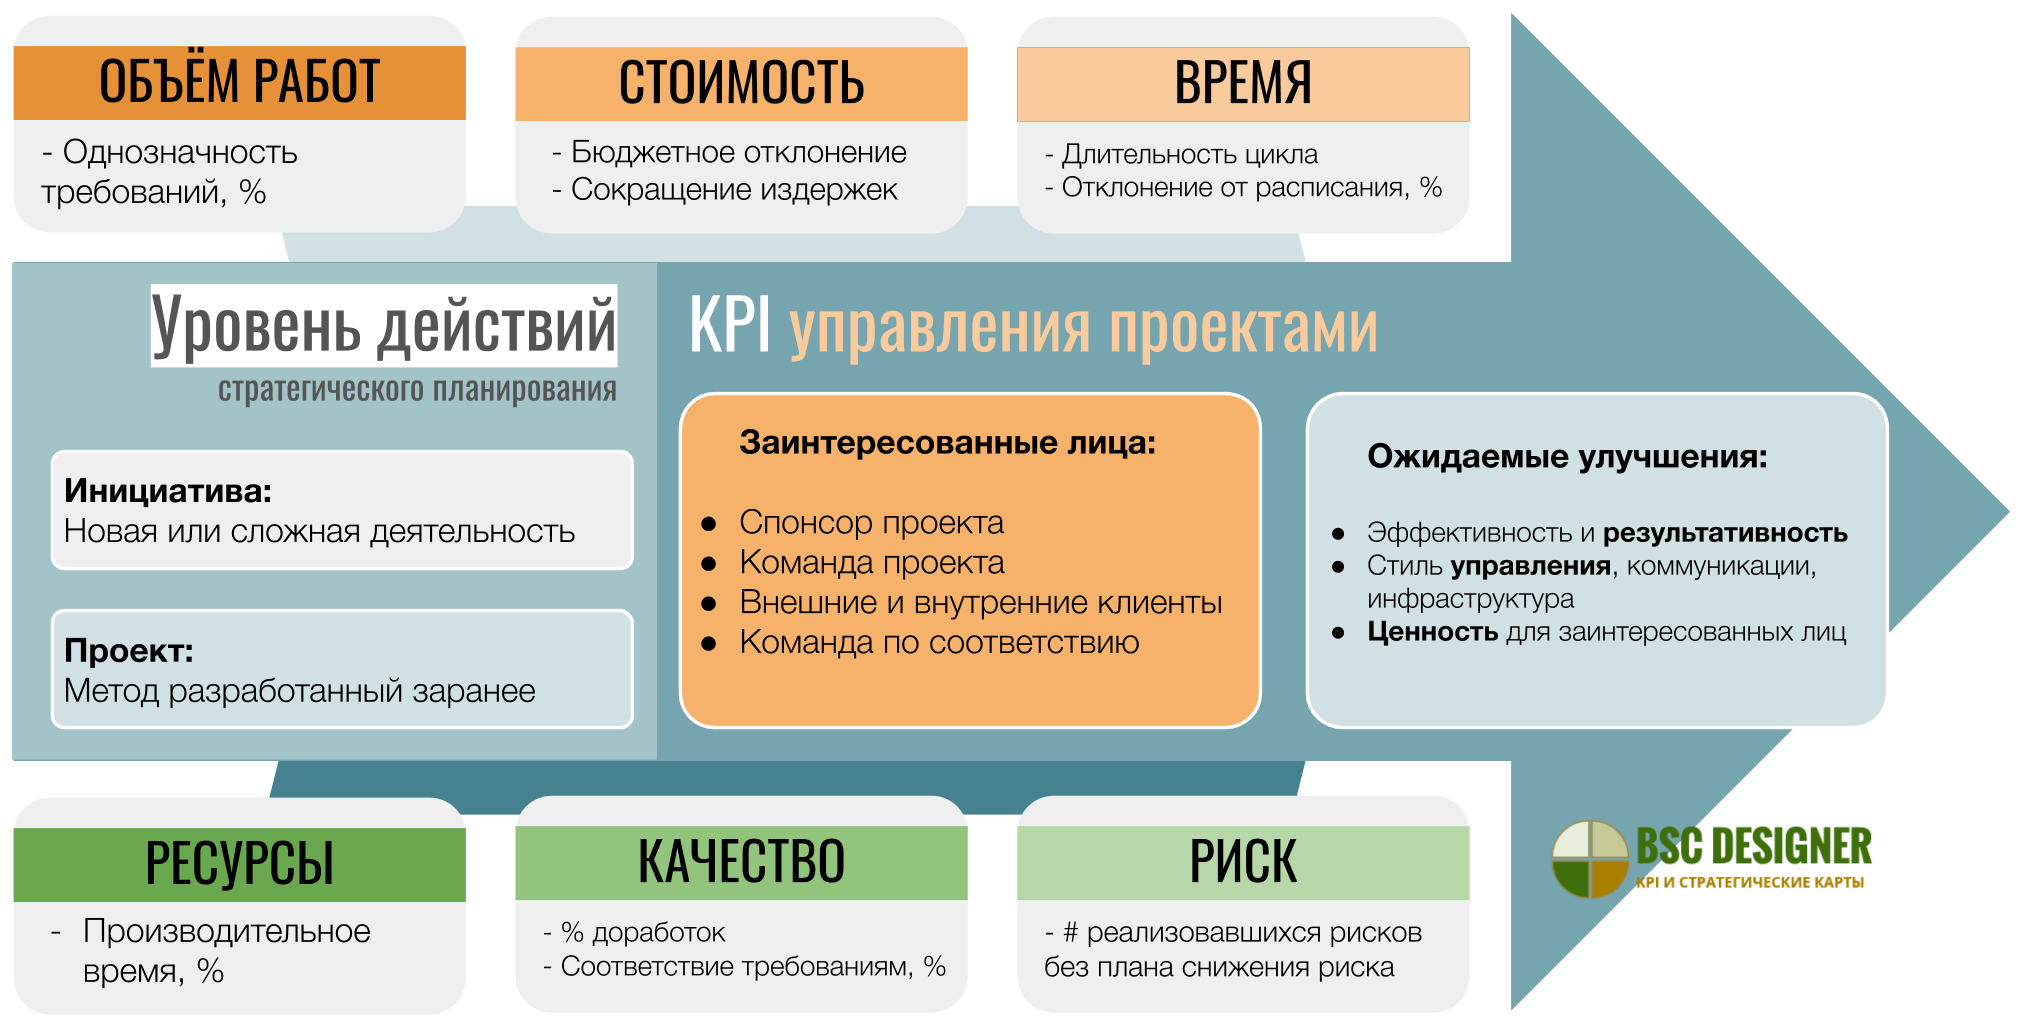 KPI для управления проектами